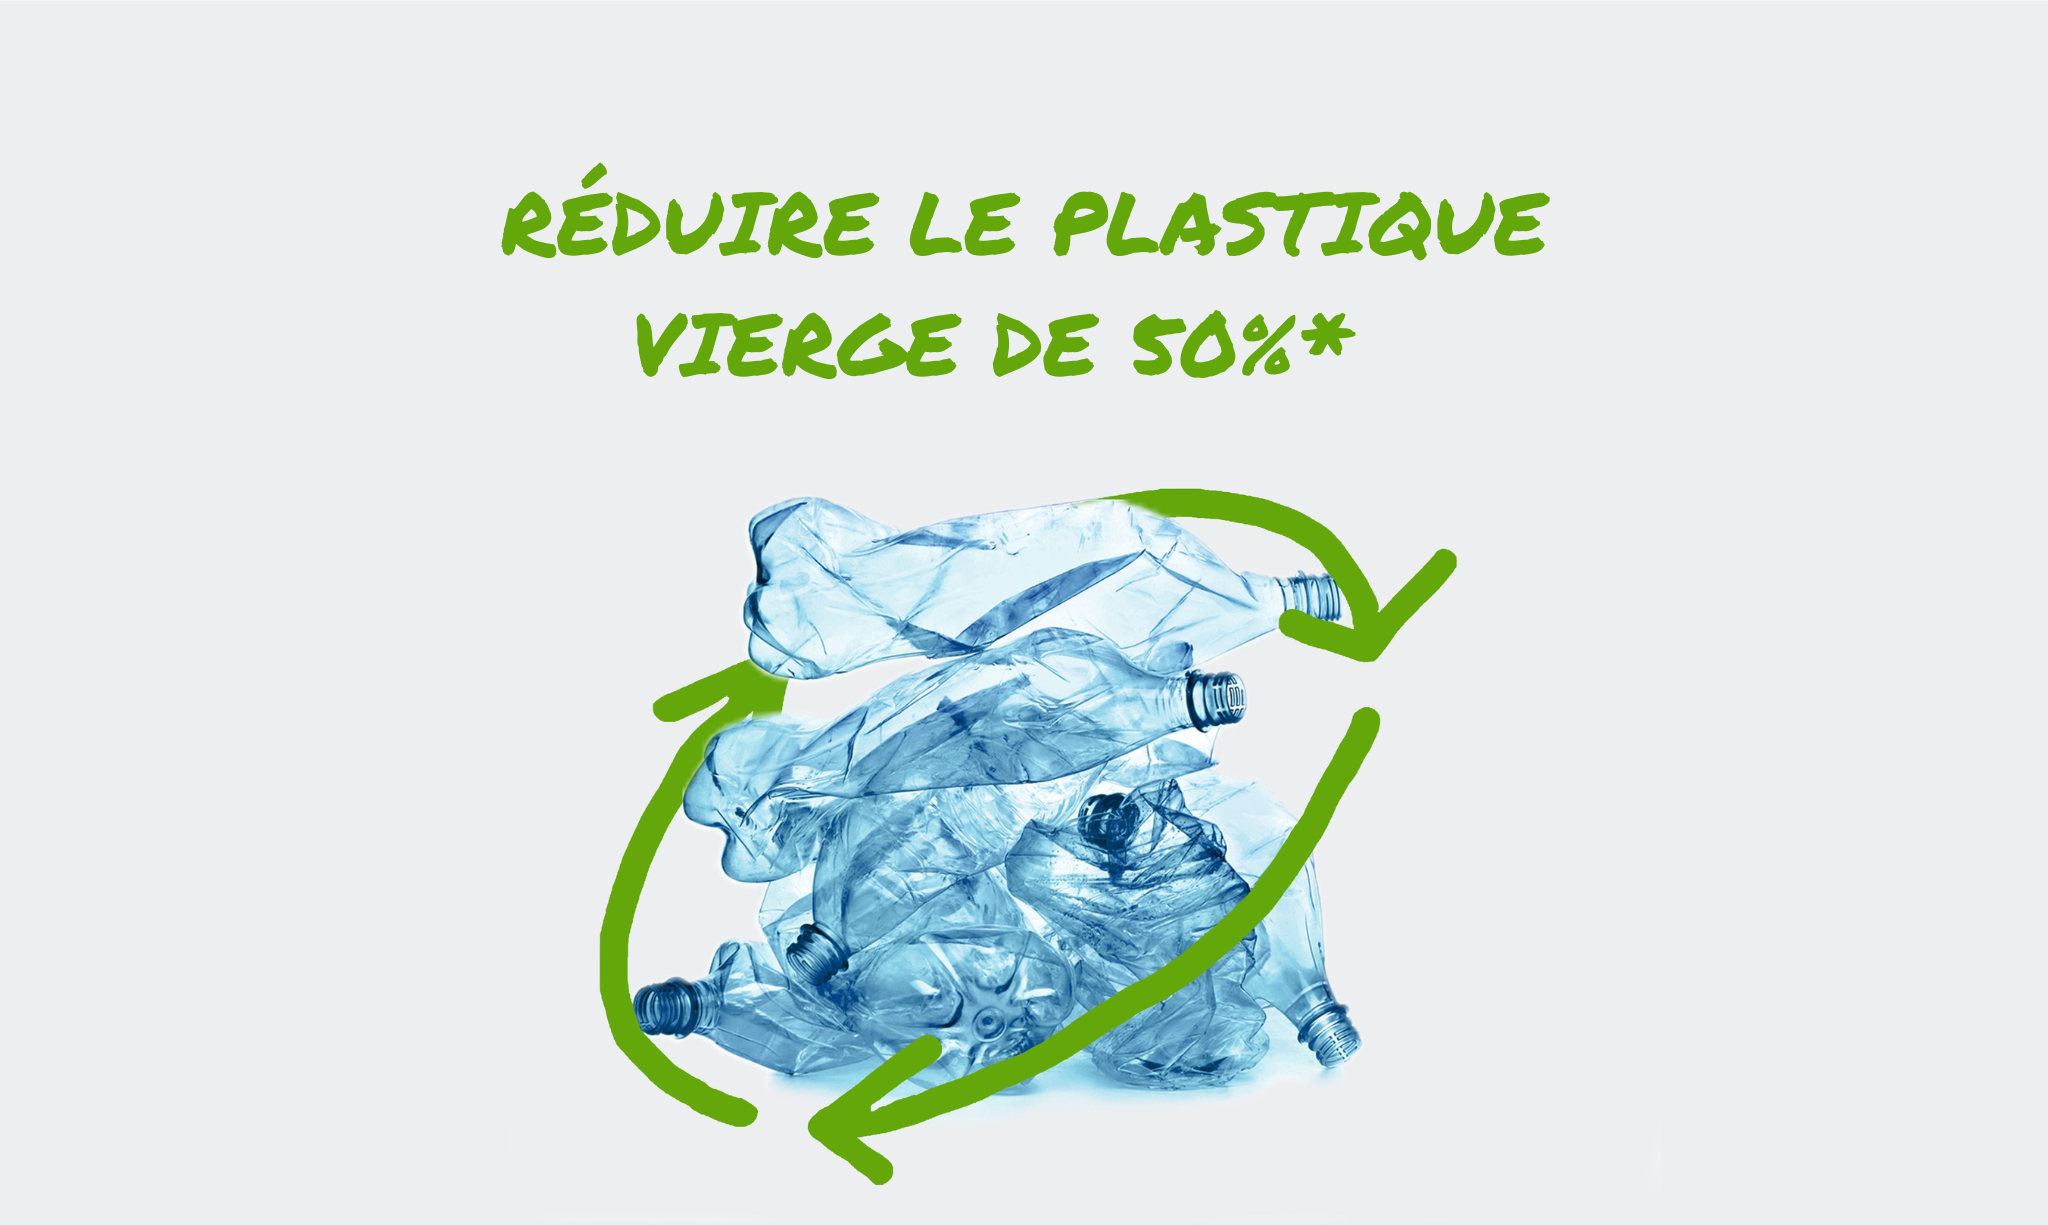 Une pile de bouteilles en plastique jetées, entourée d’un symbole de recyclage stylisé